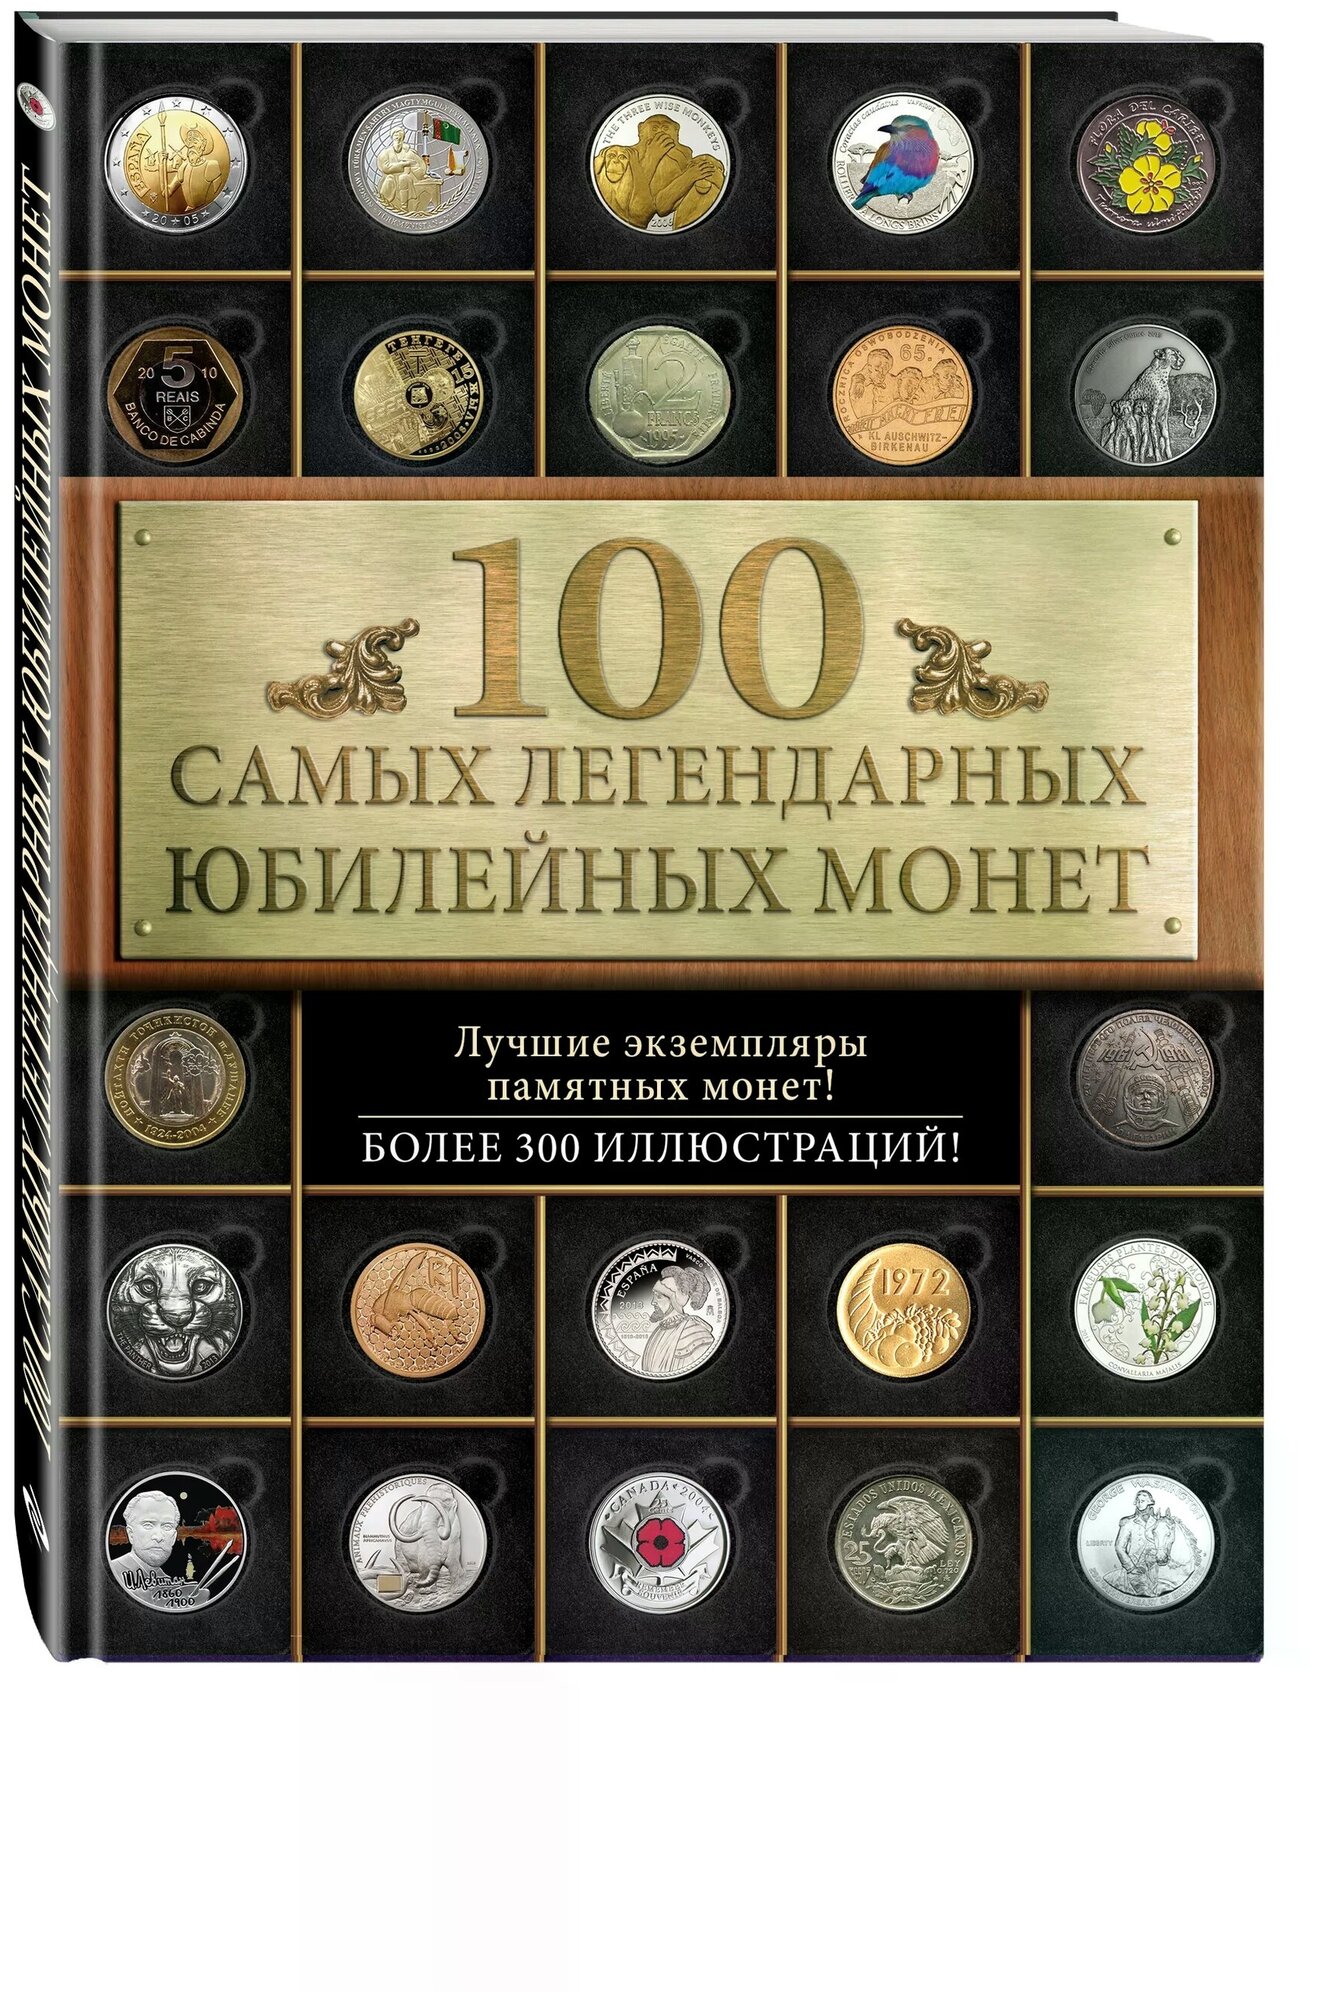 Ларин-Подольский И.А. "100 самых легендарных юбилейных монет"